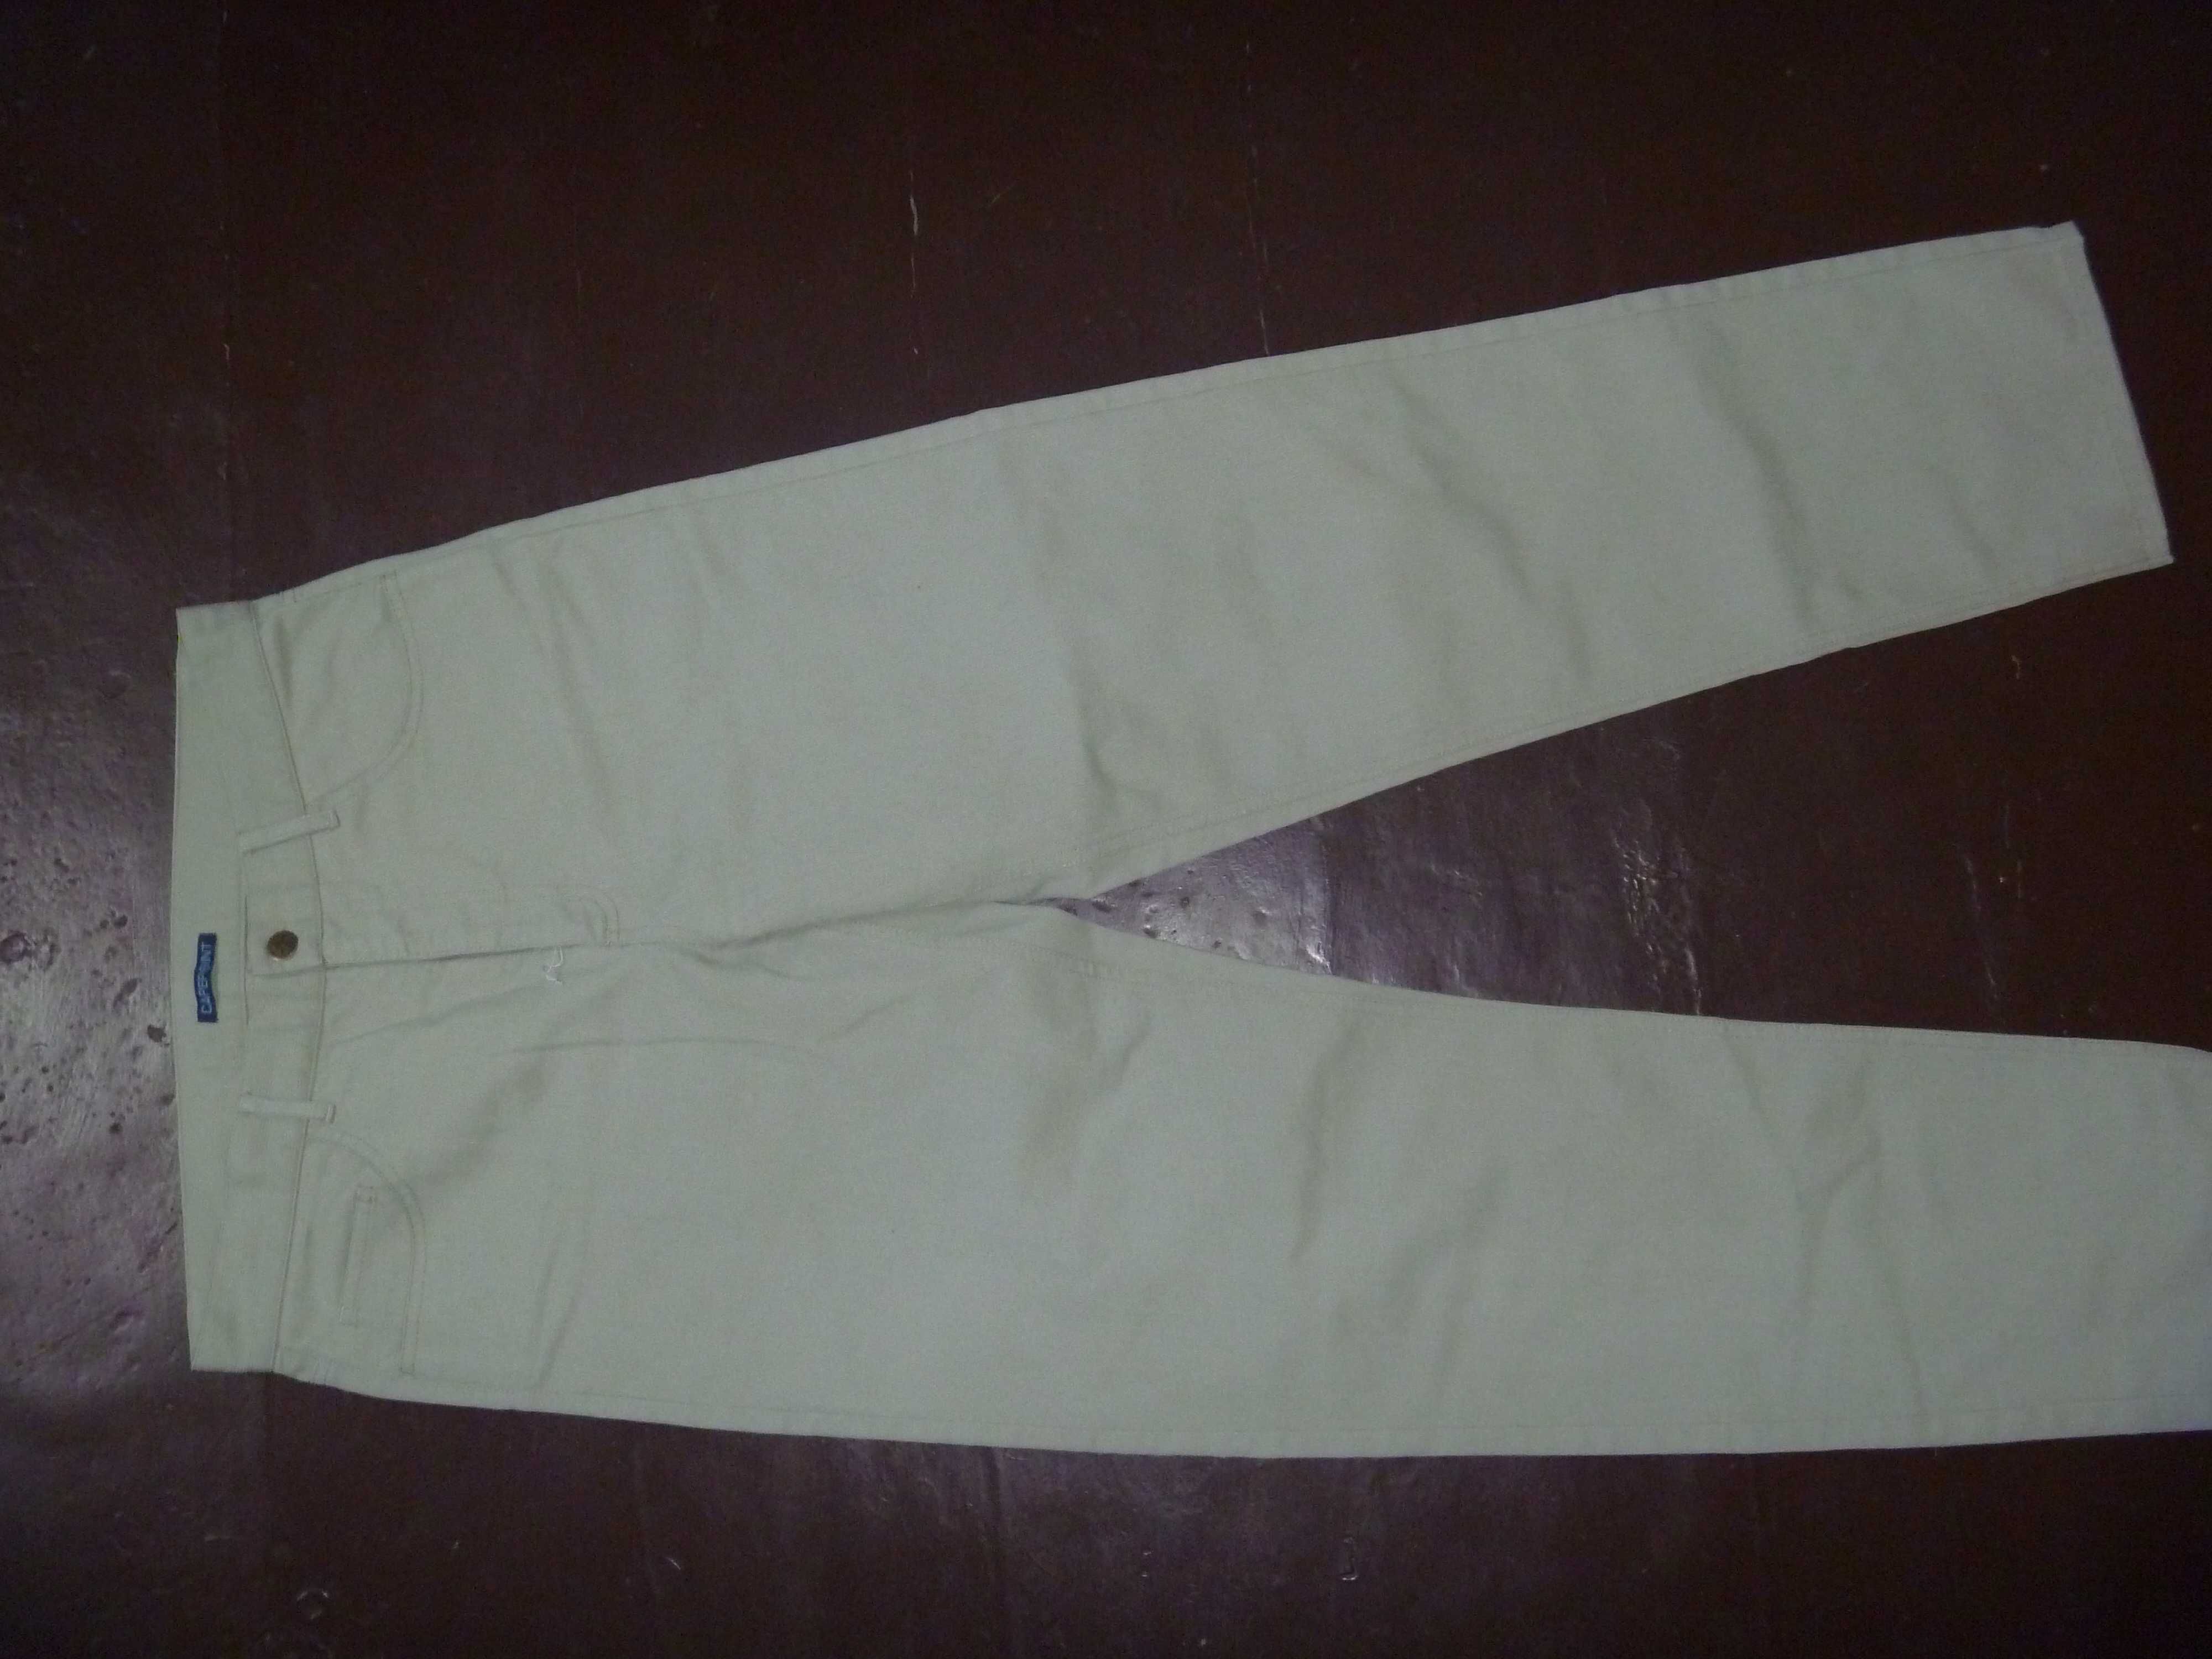 Мужские штаны/брюки CAPERPOINT. Размеры в объявлении.